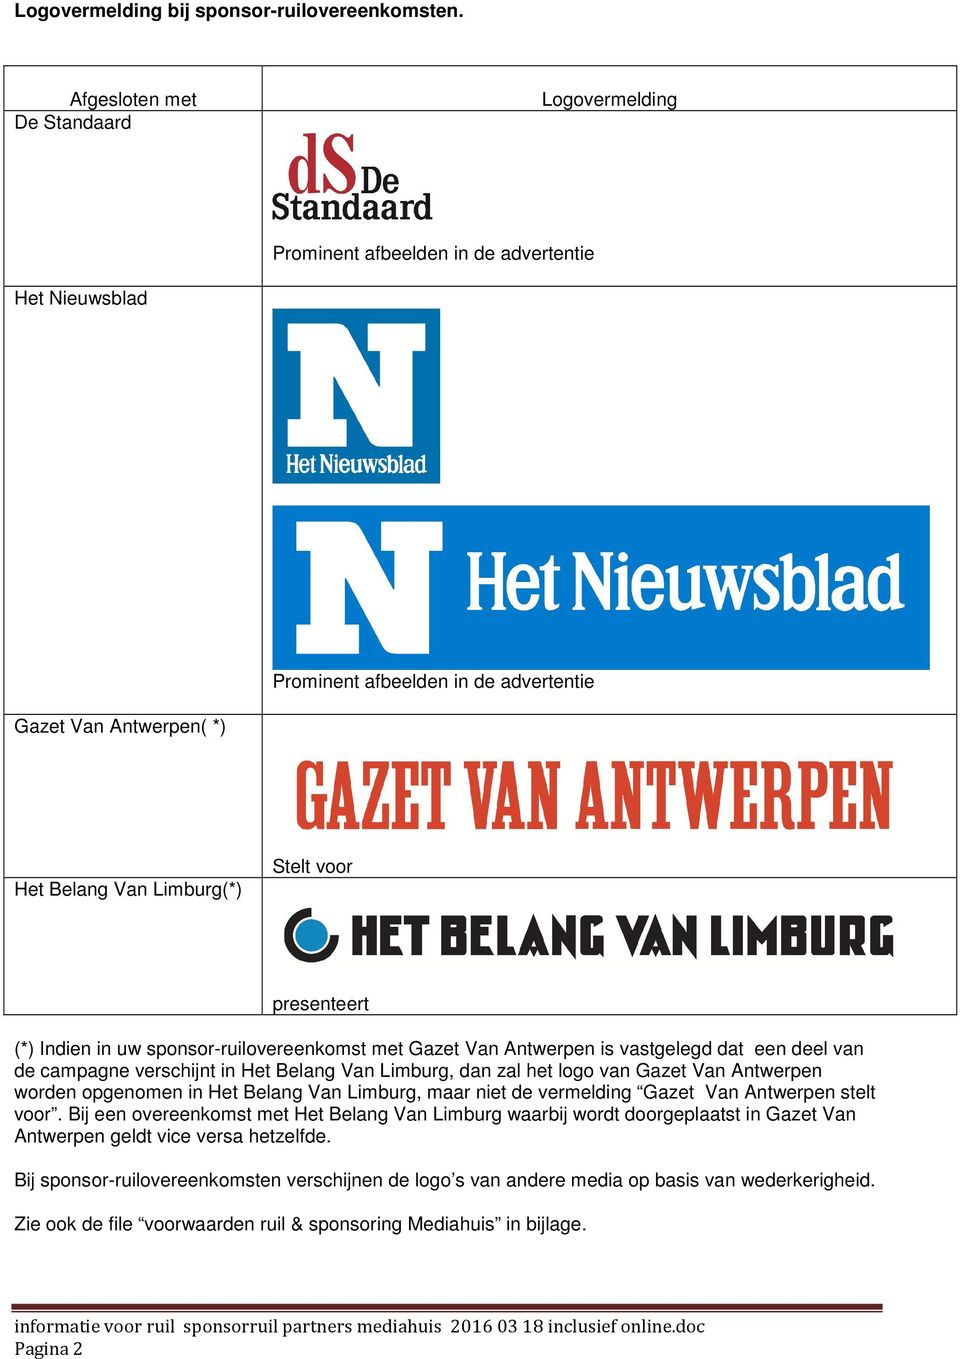 presenteert (*) Indien in uw sponsor-ruilovereenkomst met Gazet Van Antwerpen is vastgelegd dat een deel van de campagne verschijnt in Het Belang Van Limburg, dan zal het logo van Gazet Van Antwerpen